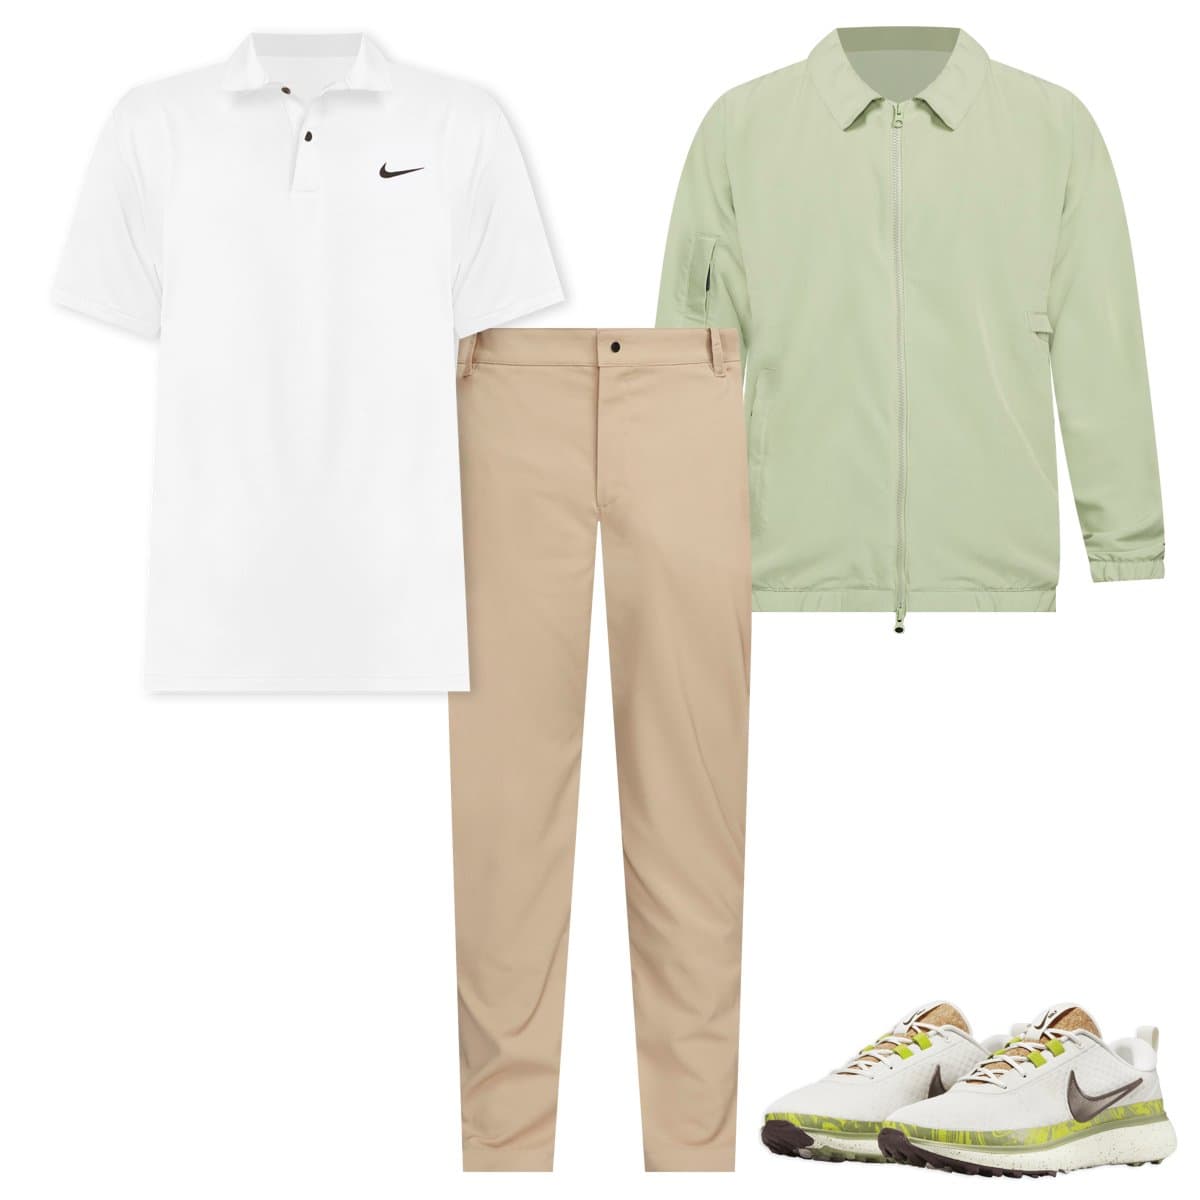 Gesves : une gamme de vêtements de golf voit le jour - La DH/Les Sports+